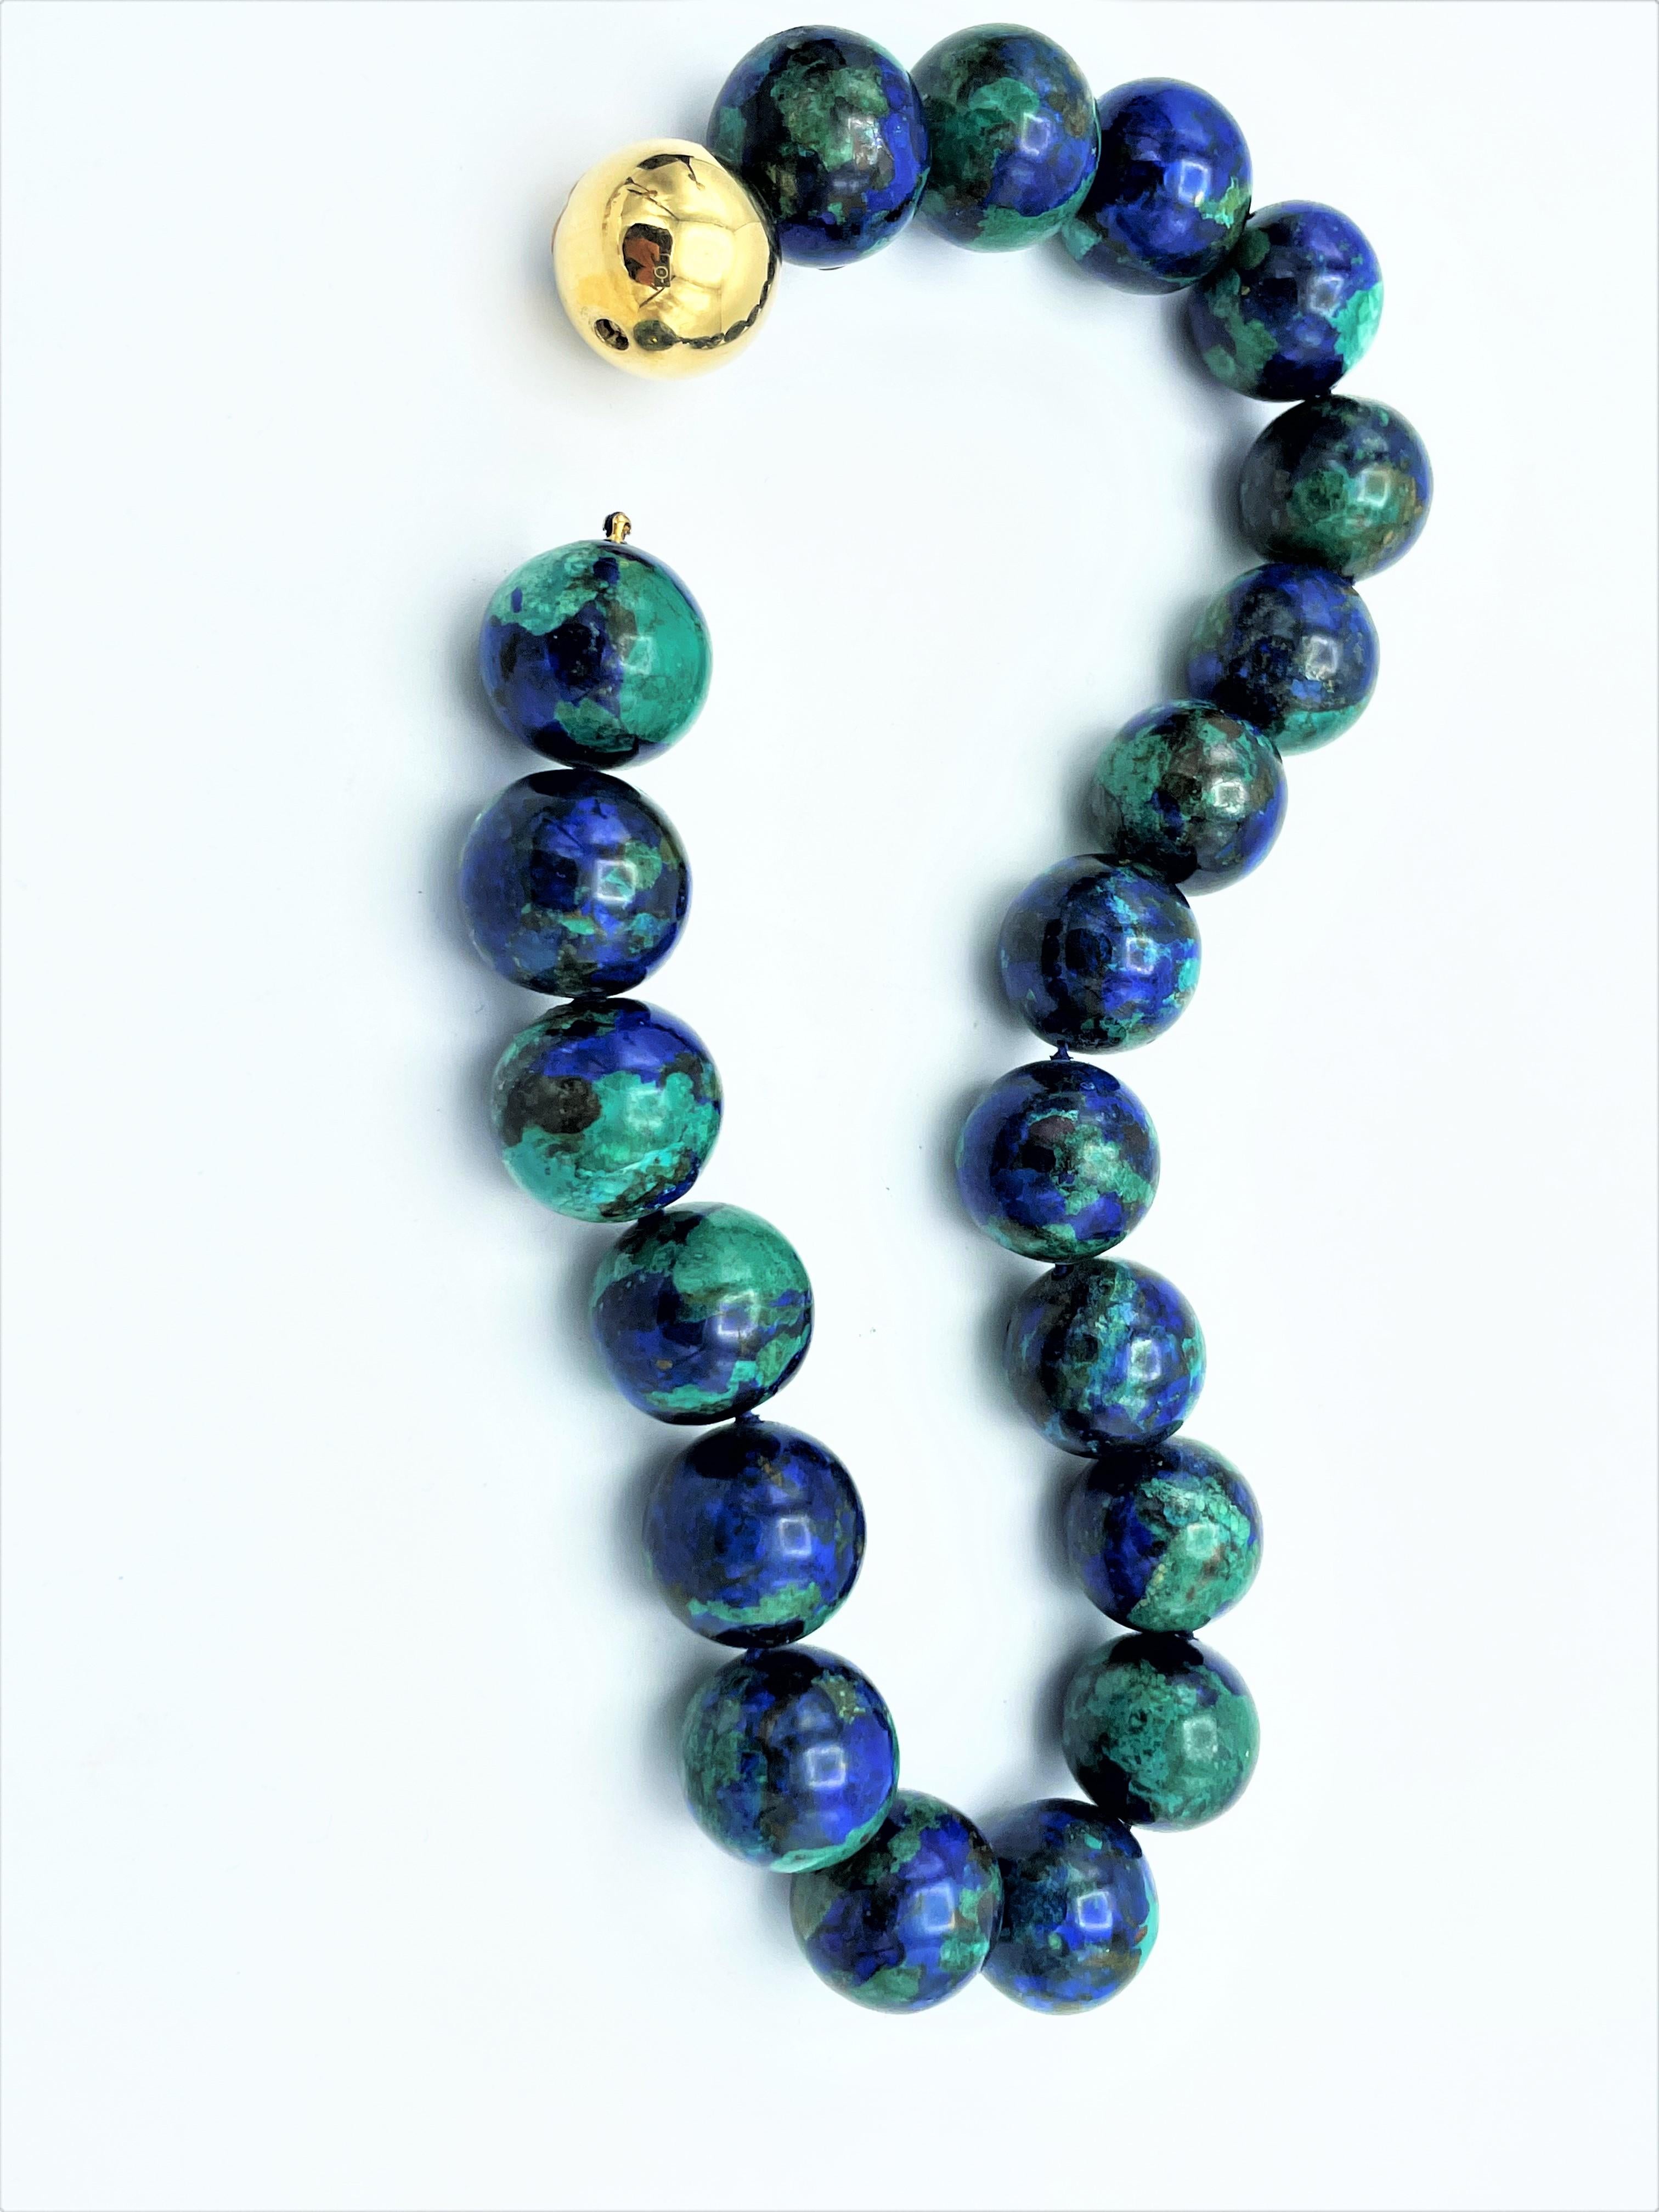 2 Edelsteinketten Azurit-Malachit und Jaspis mit Kugelschloss für beide Ketten für Damen oder Herren